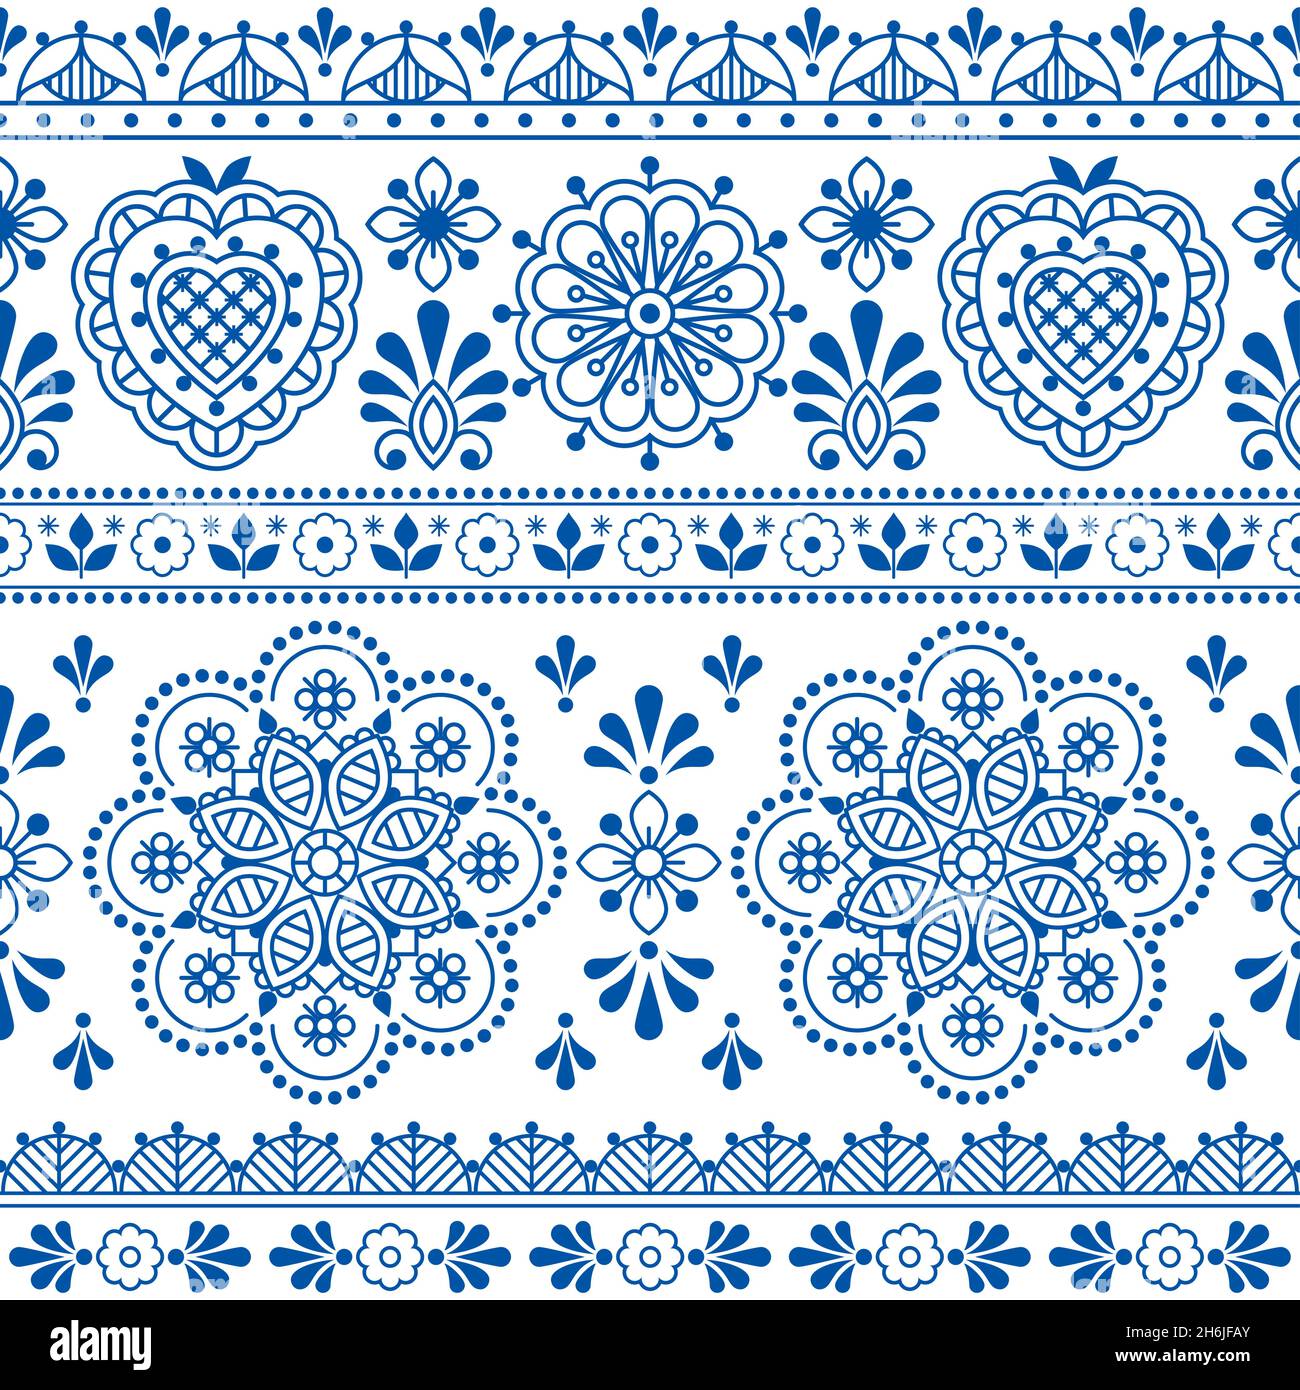 Skandinavische Volkskunst blau Vektor nahtlose Textil- oder Stoffdruck, ncute repetitve Design mit Blumen inspiriert von Spitze und Stickerei Hintergründe Stock Vektor